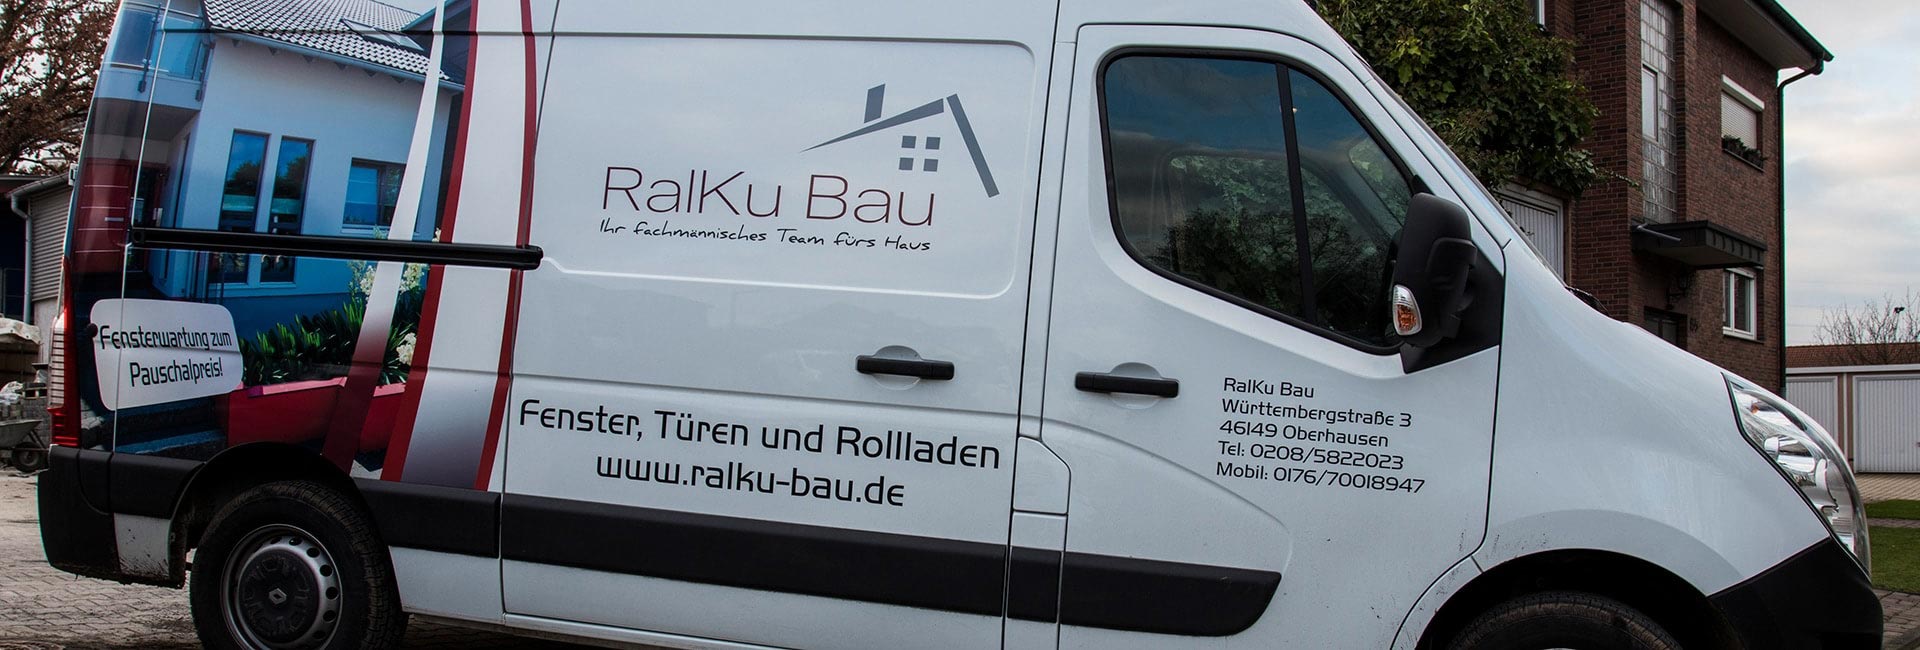 Fahrzeug von RalKu Bau